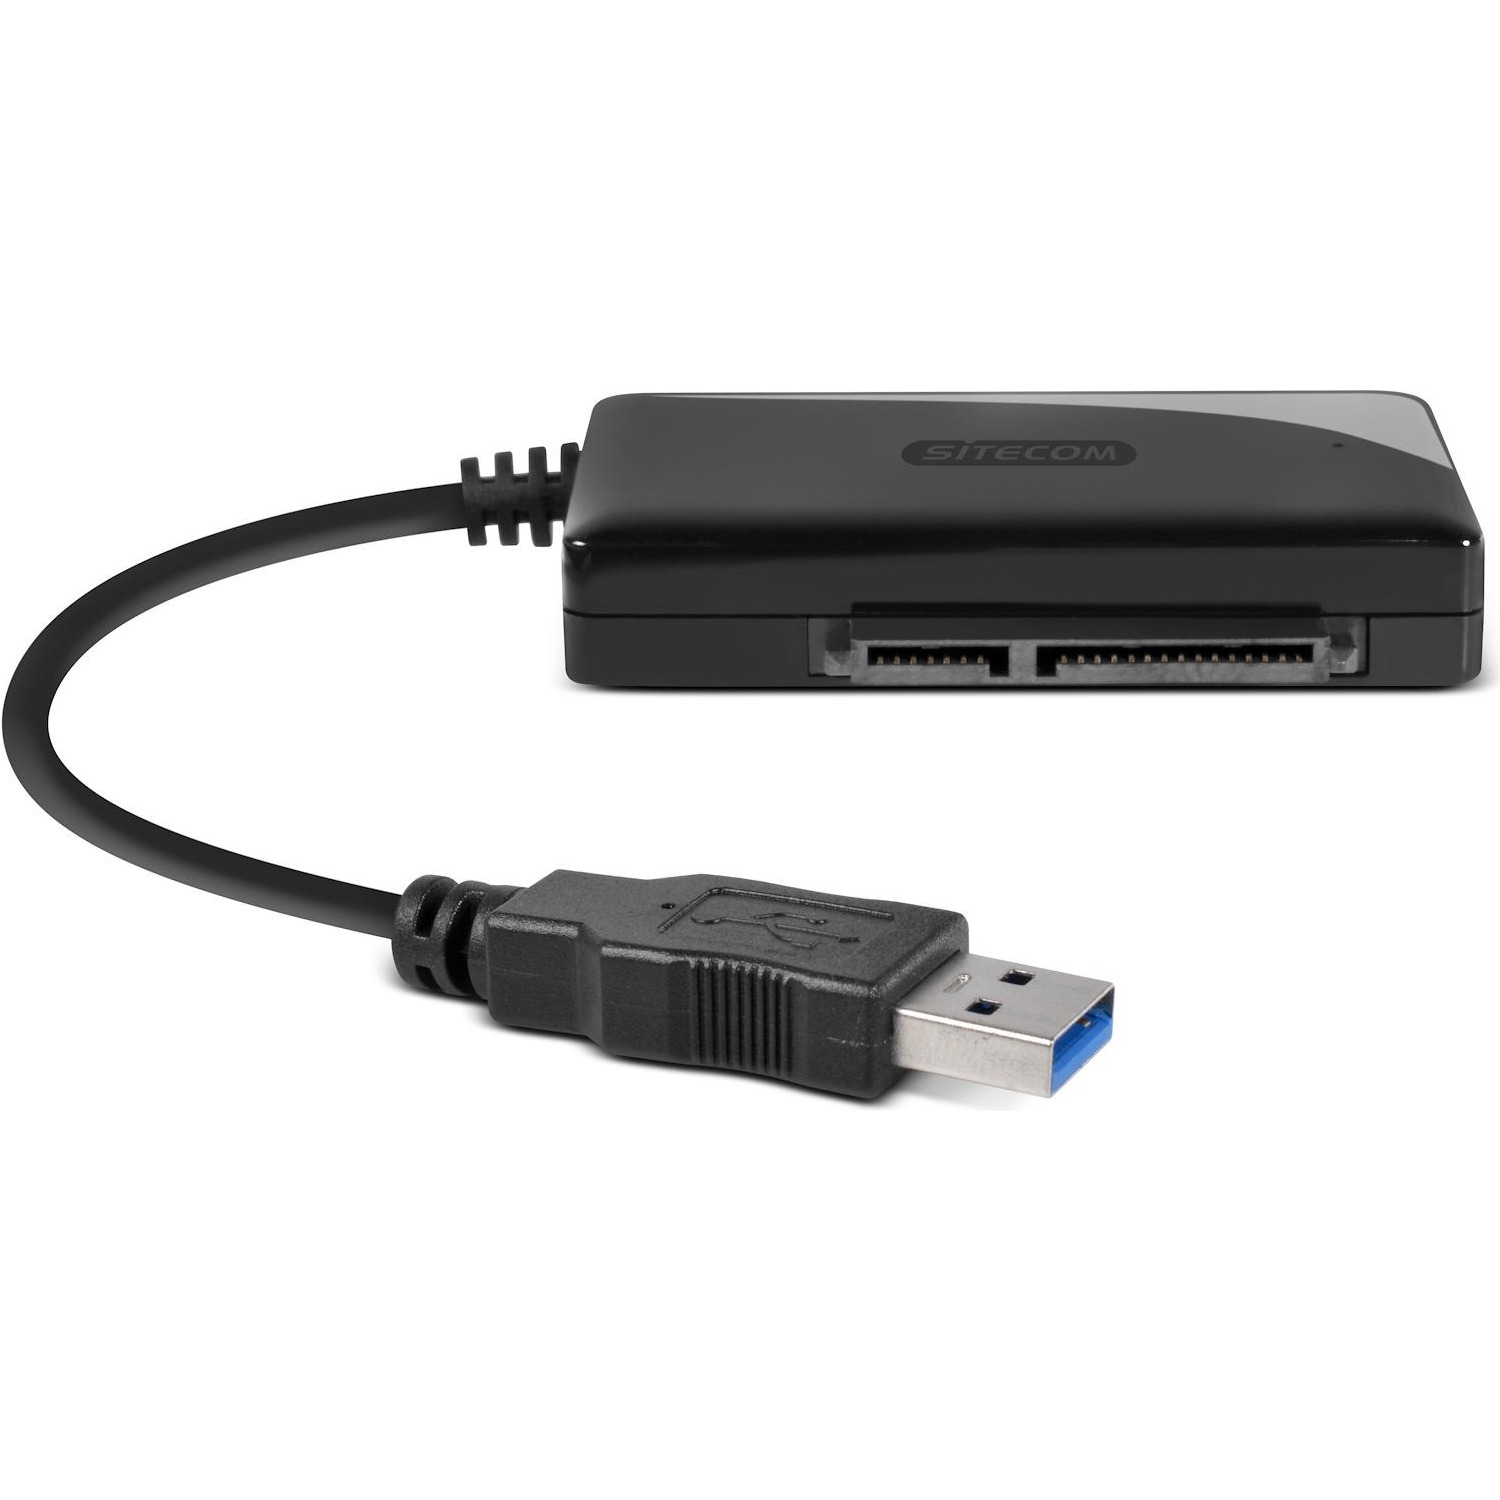 Immagine per Adattatore Sitecom USB 3.0 a SATA da DIMOStore